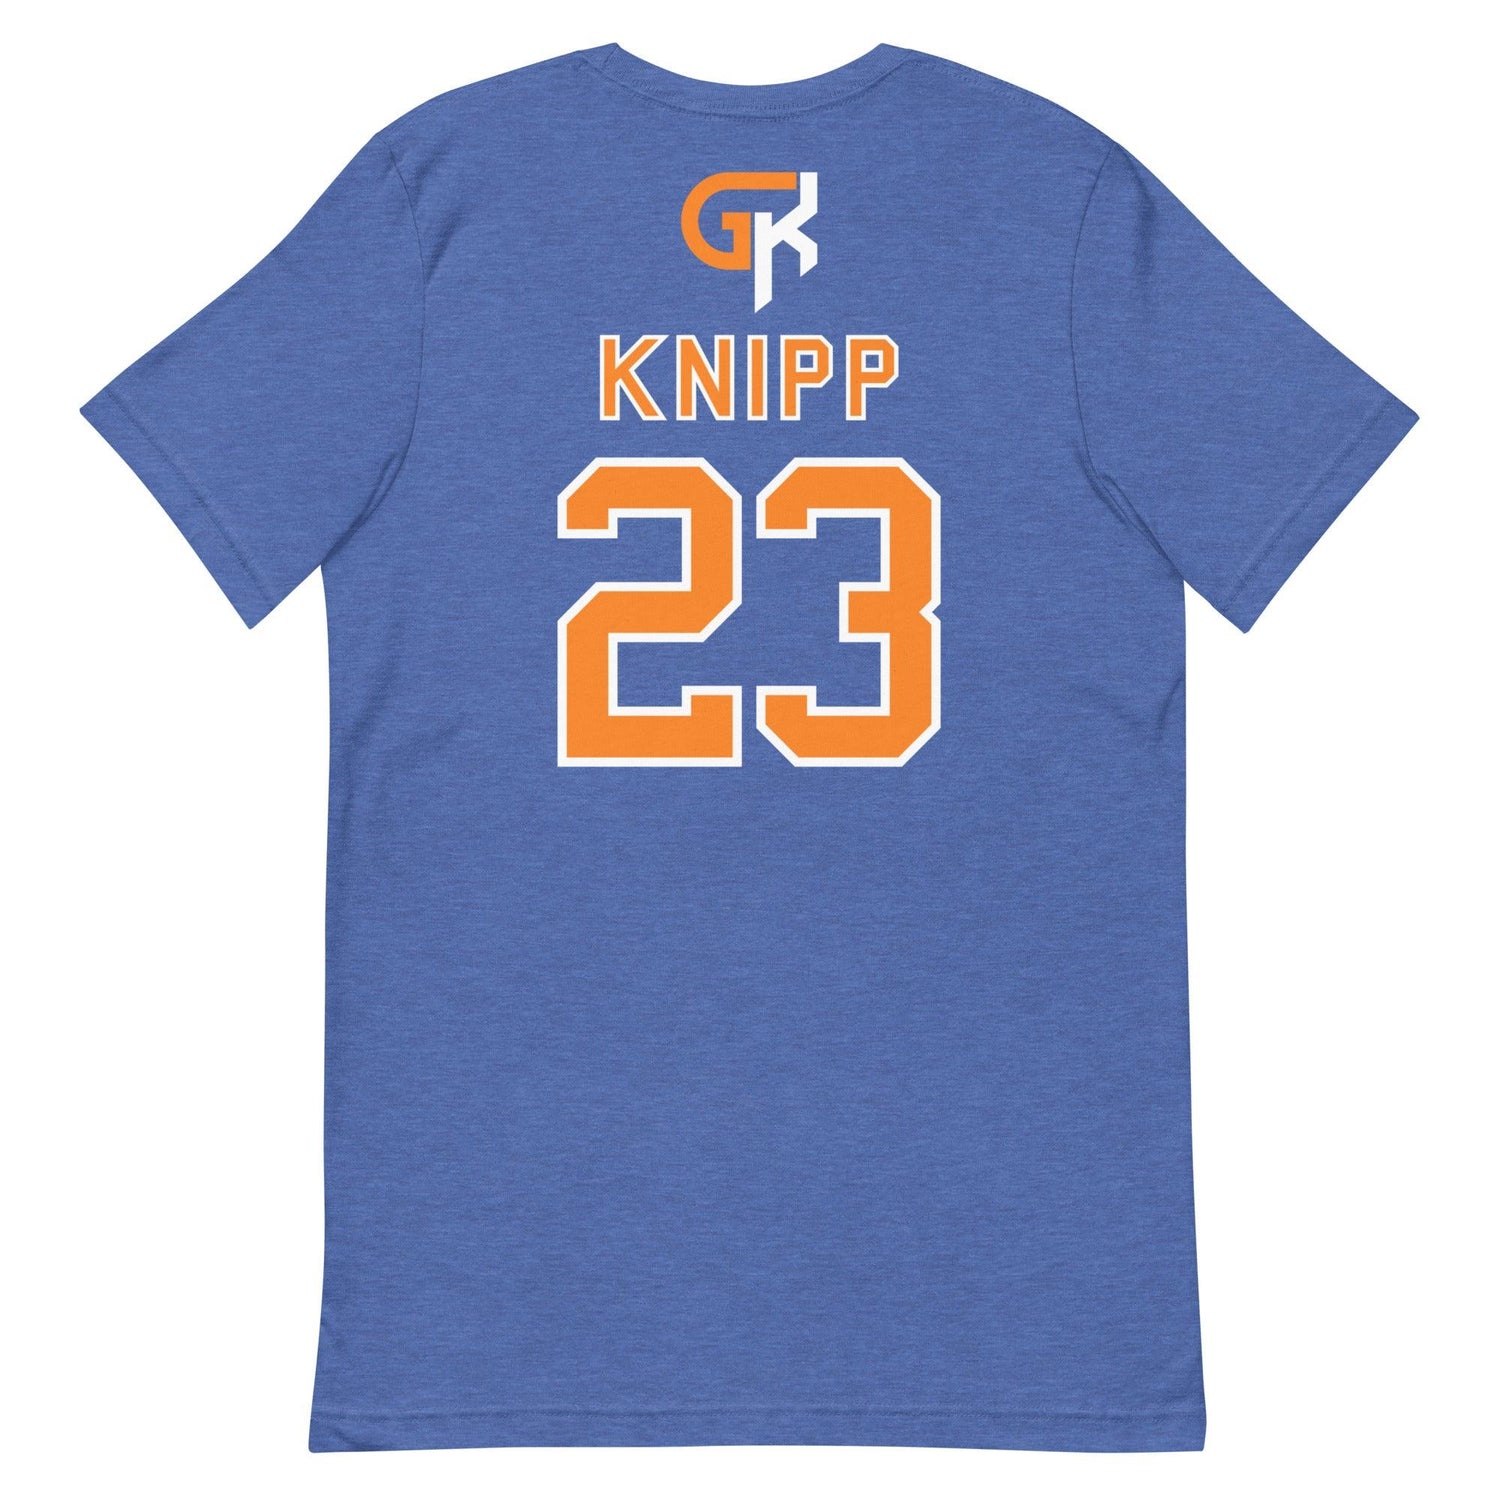 Grant Knipp "Jersey" t-shirt - Fan Arch